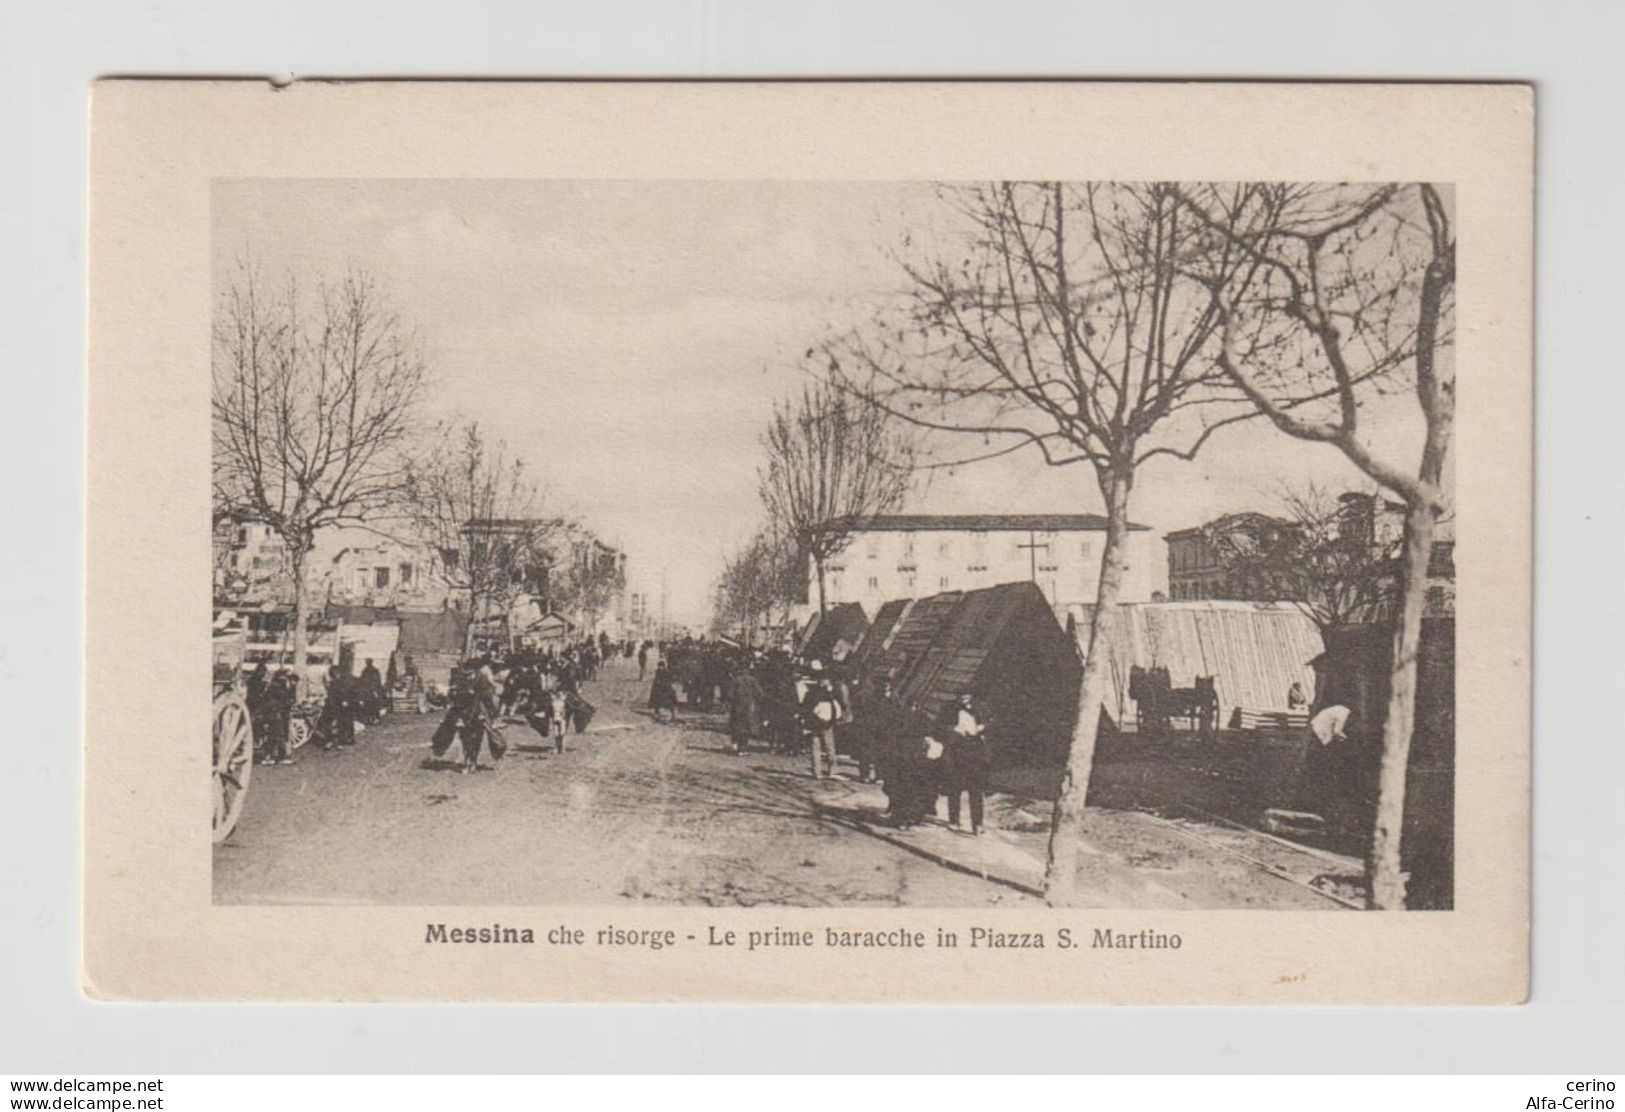 MESSINA  CHE  RISORGE:  LE  PRIME  BARACCHE  IN  PIAZZA  S. MARTINO  DOPO  IL  TERREMOTO  DEL  1908  -  FOTO  -  FP - Disasters